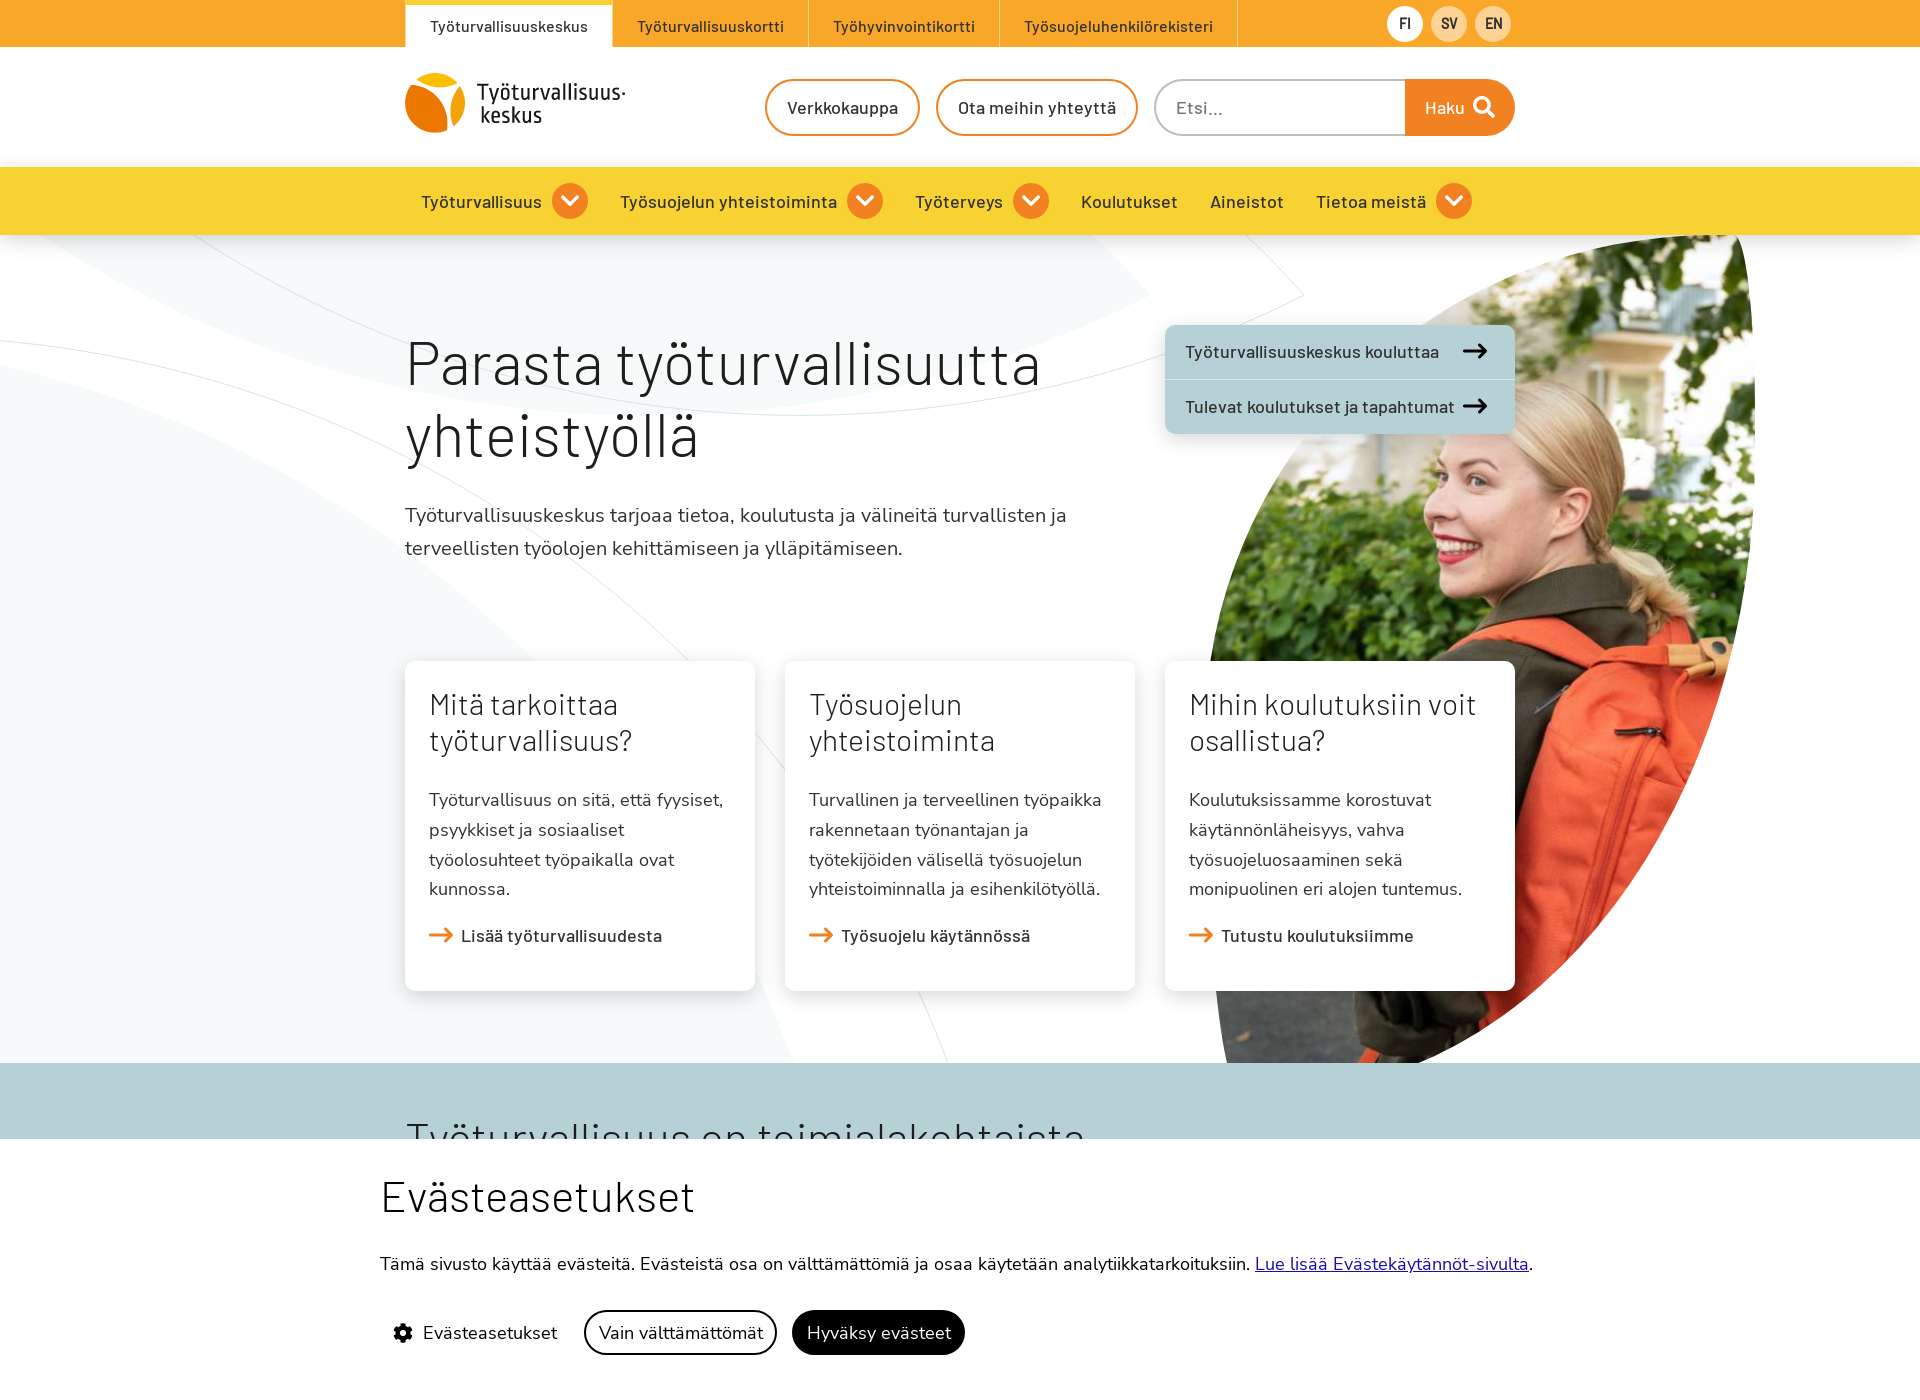 Näyttökuva työturvallisuuskeskus.fi